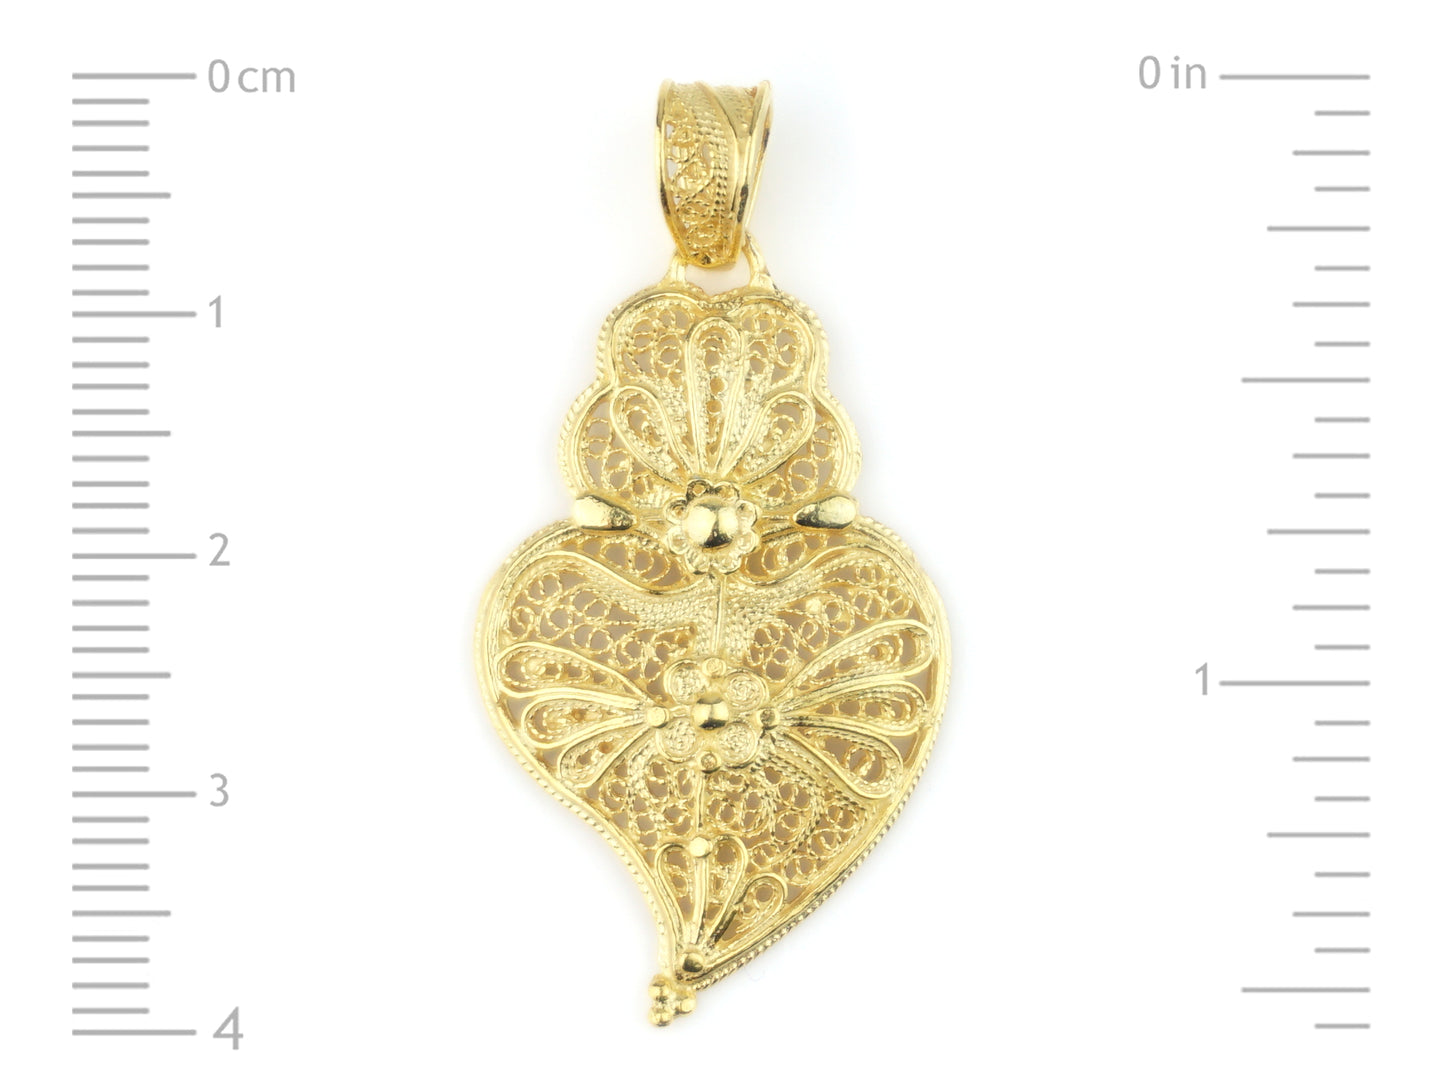 Medalha Coração de Viana Pequeno, Filigrana Portuguesa, Prata de Lei 925 Dourada - Medidas